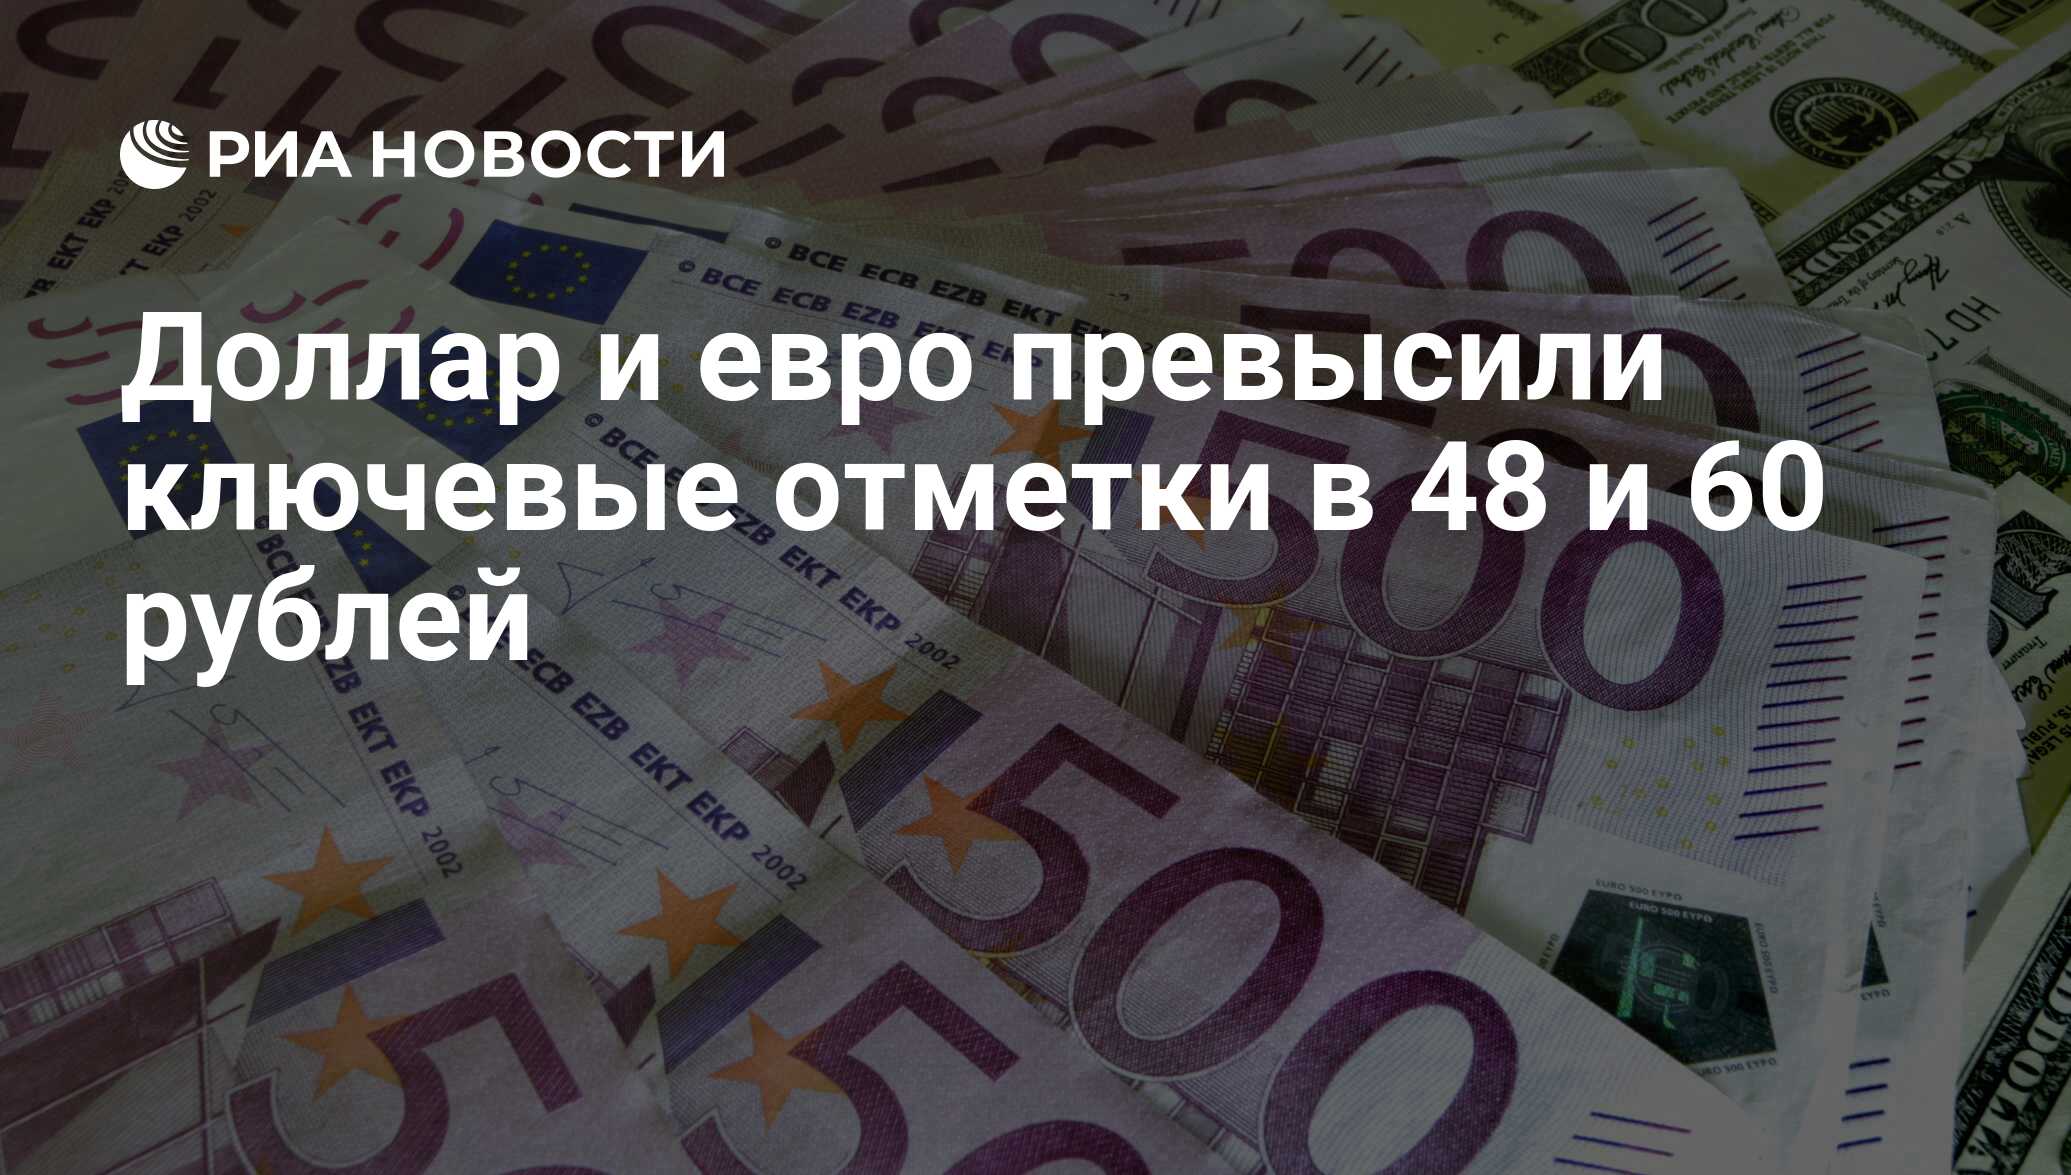 11 000 долларов в рублях. Миллионы евро для Украины. 60 Евро в рублях. Украинская валюта. ЕС выделит миллионы евро.